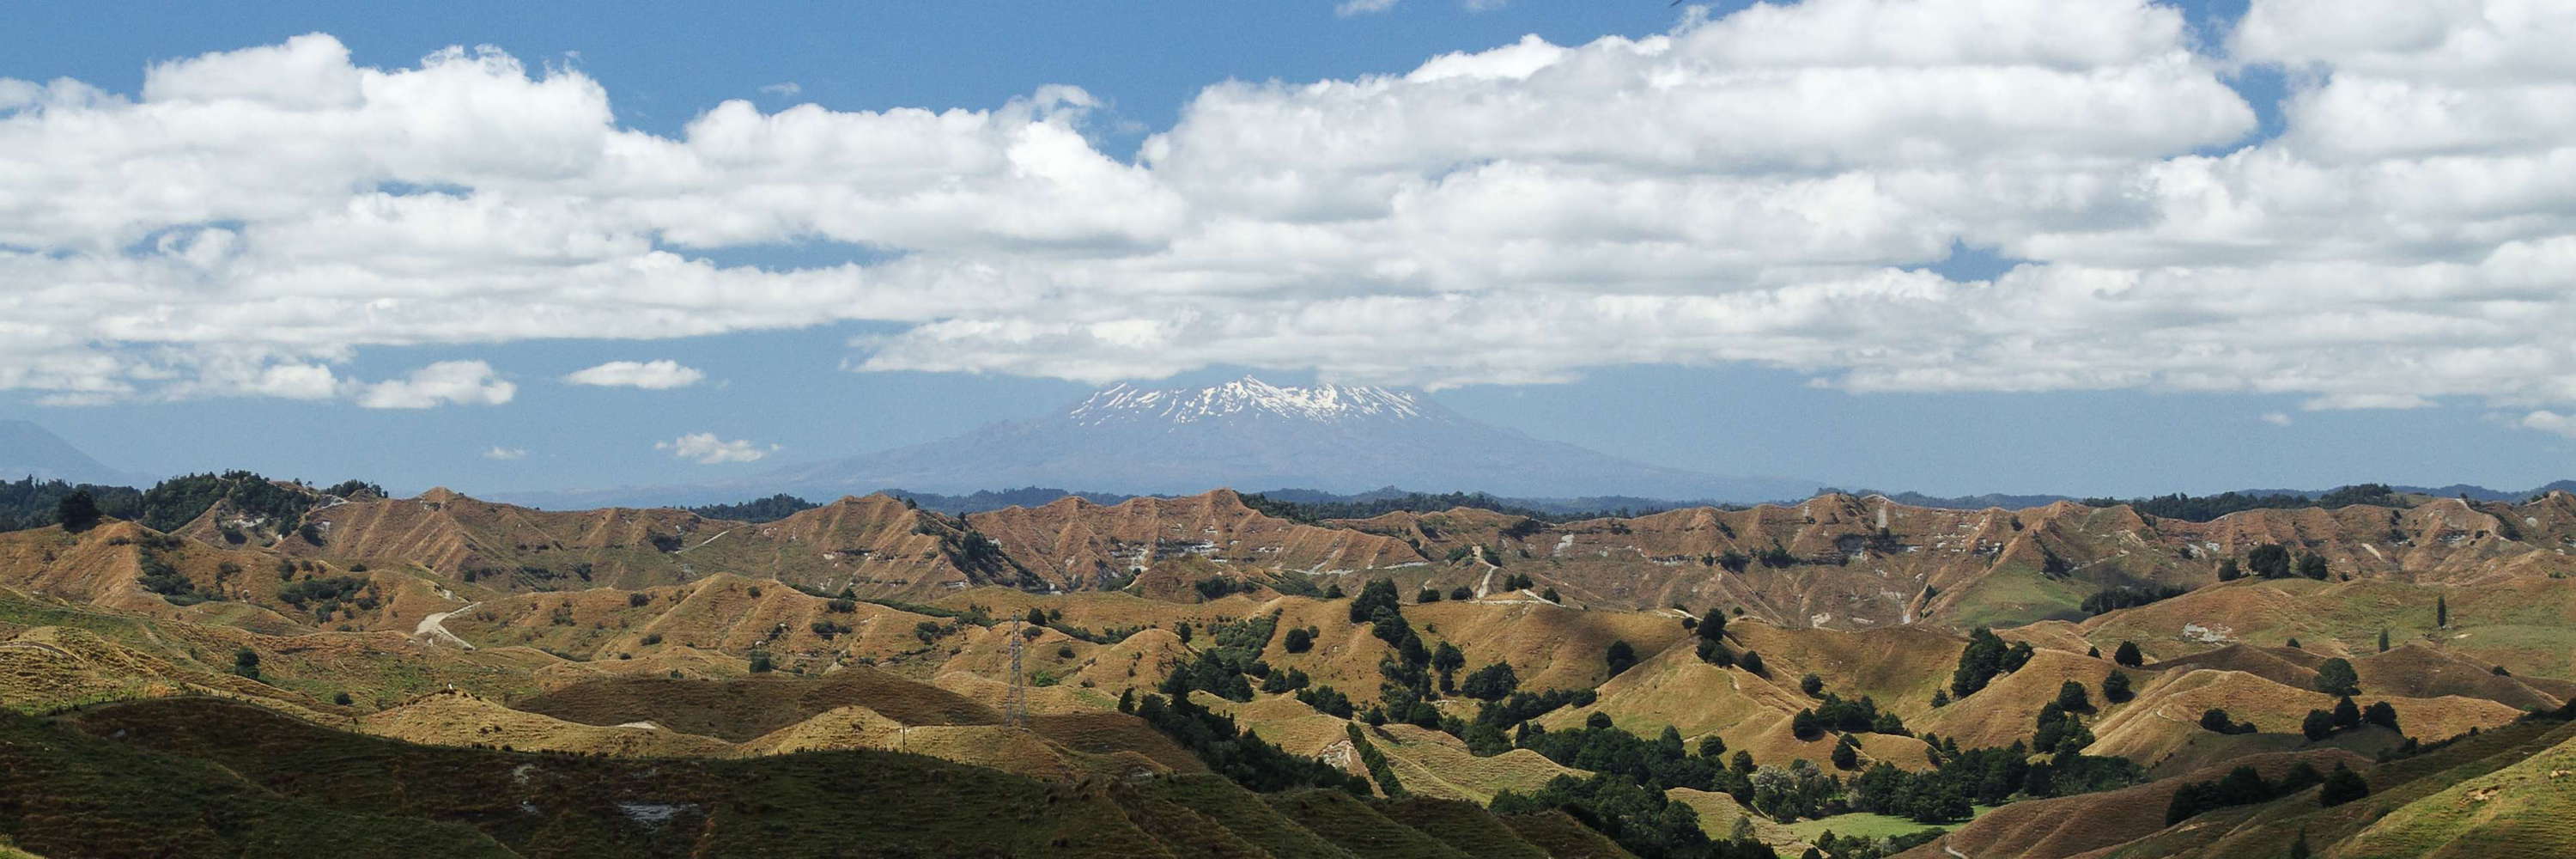 Forgotten World Highway  |  View to Mt. Ruapehu